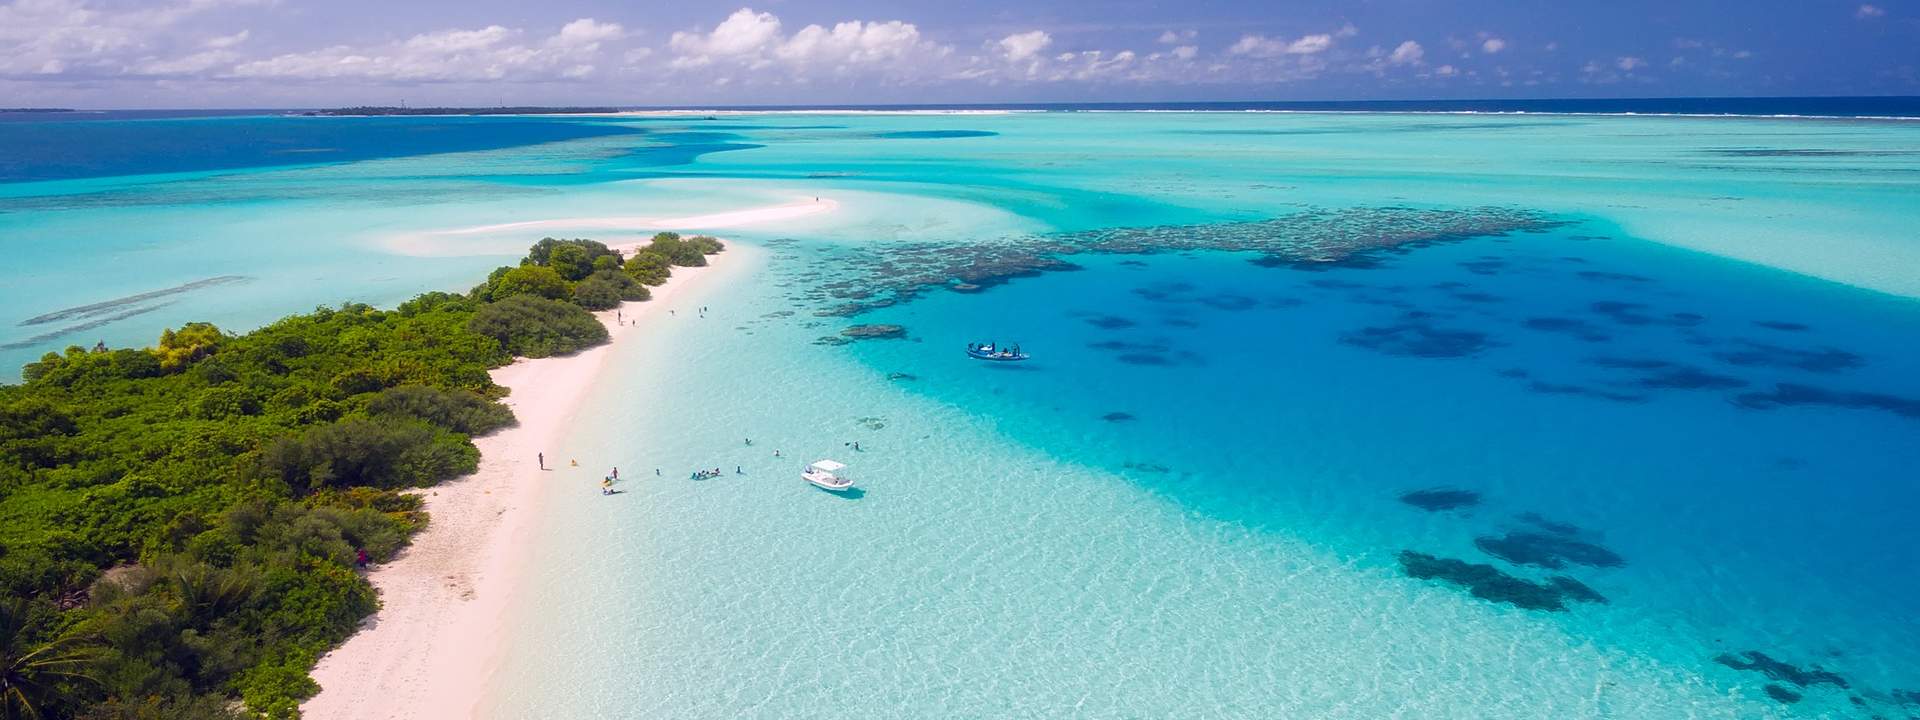 Explora el paraíso tropical de las Maldivas en catamarán